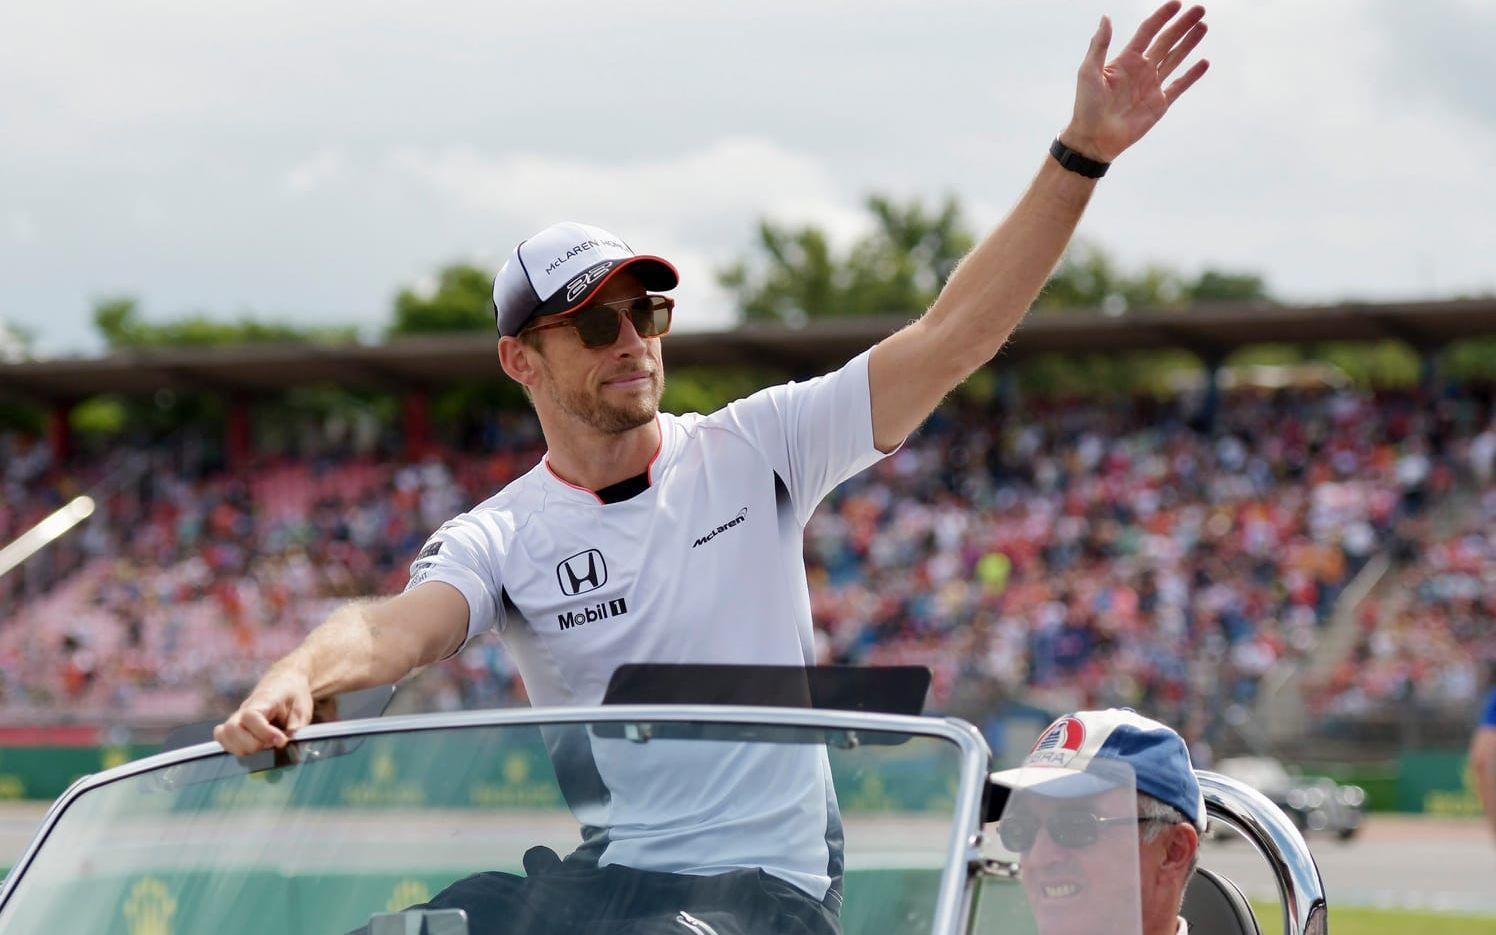 4. Jenson Button, formel 1. Förmögenhet: 983 miljoner kronor. Bild: Bildbyrån.
